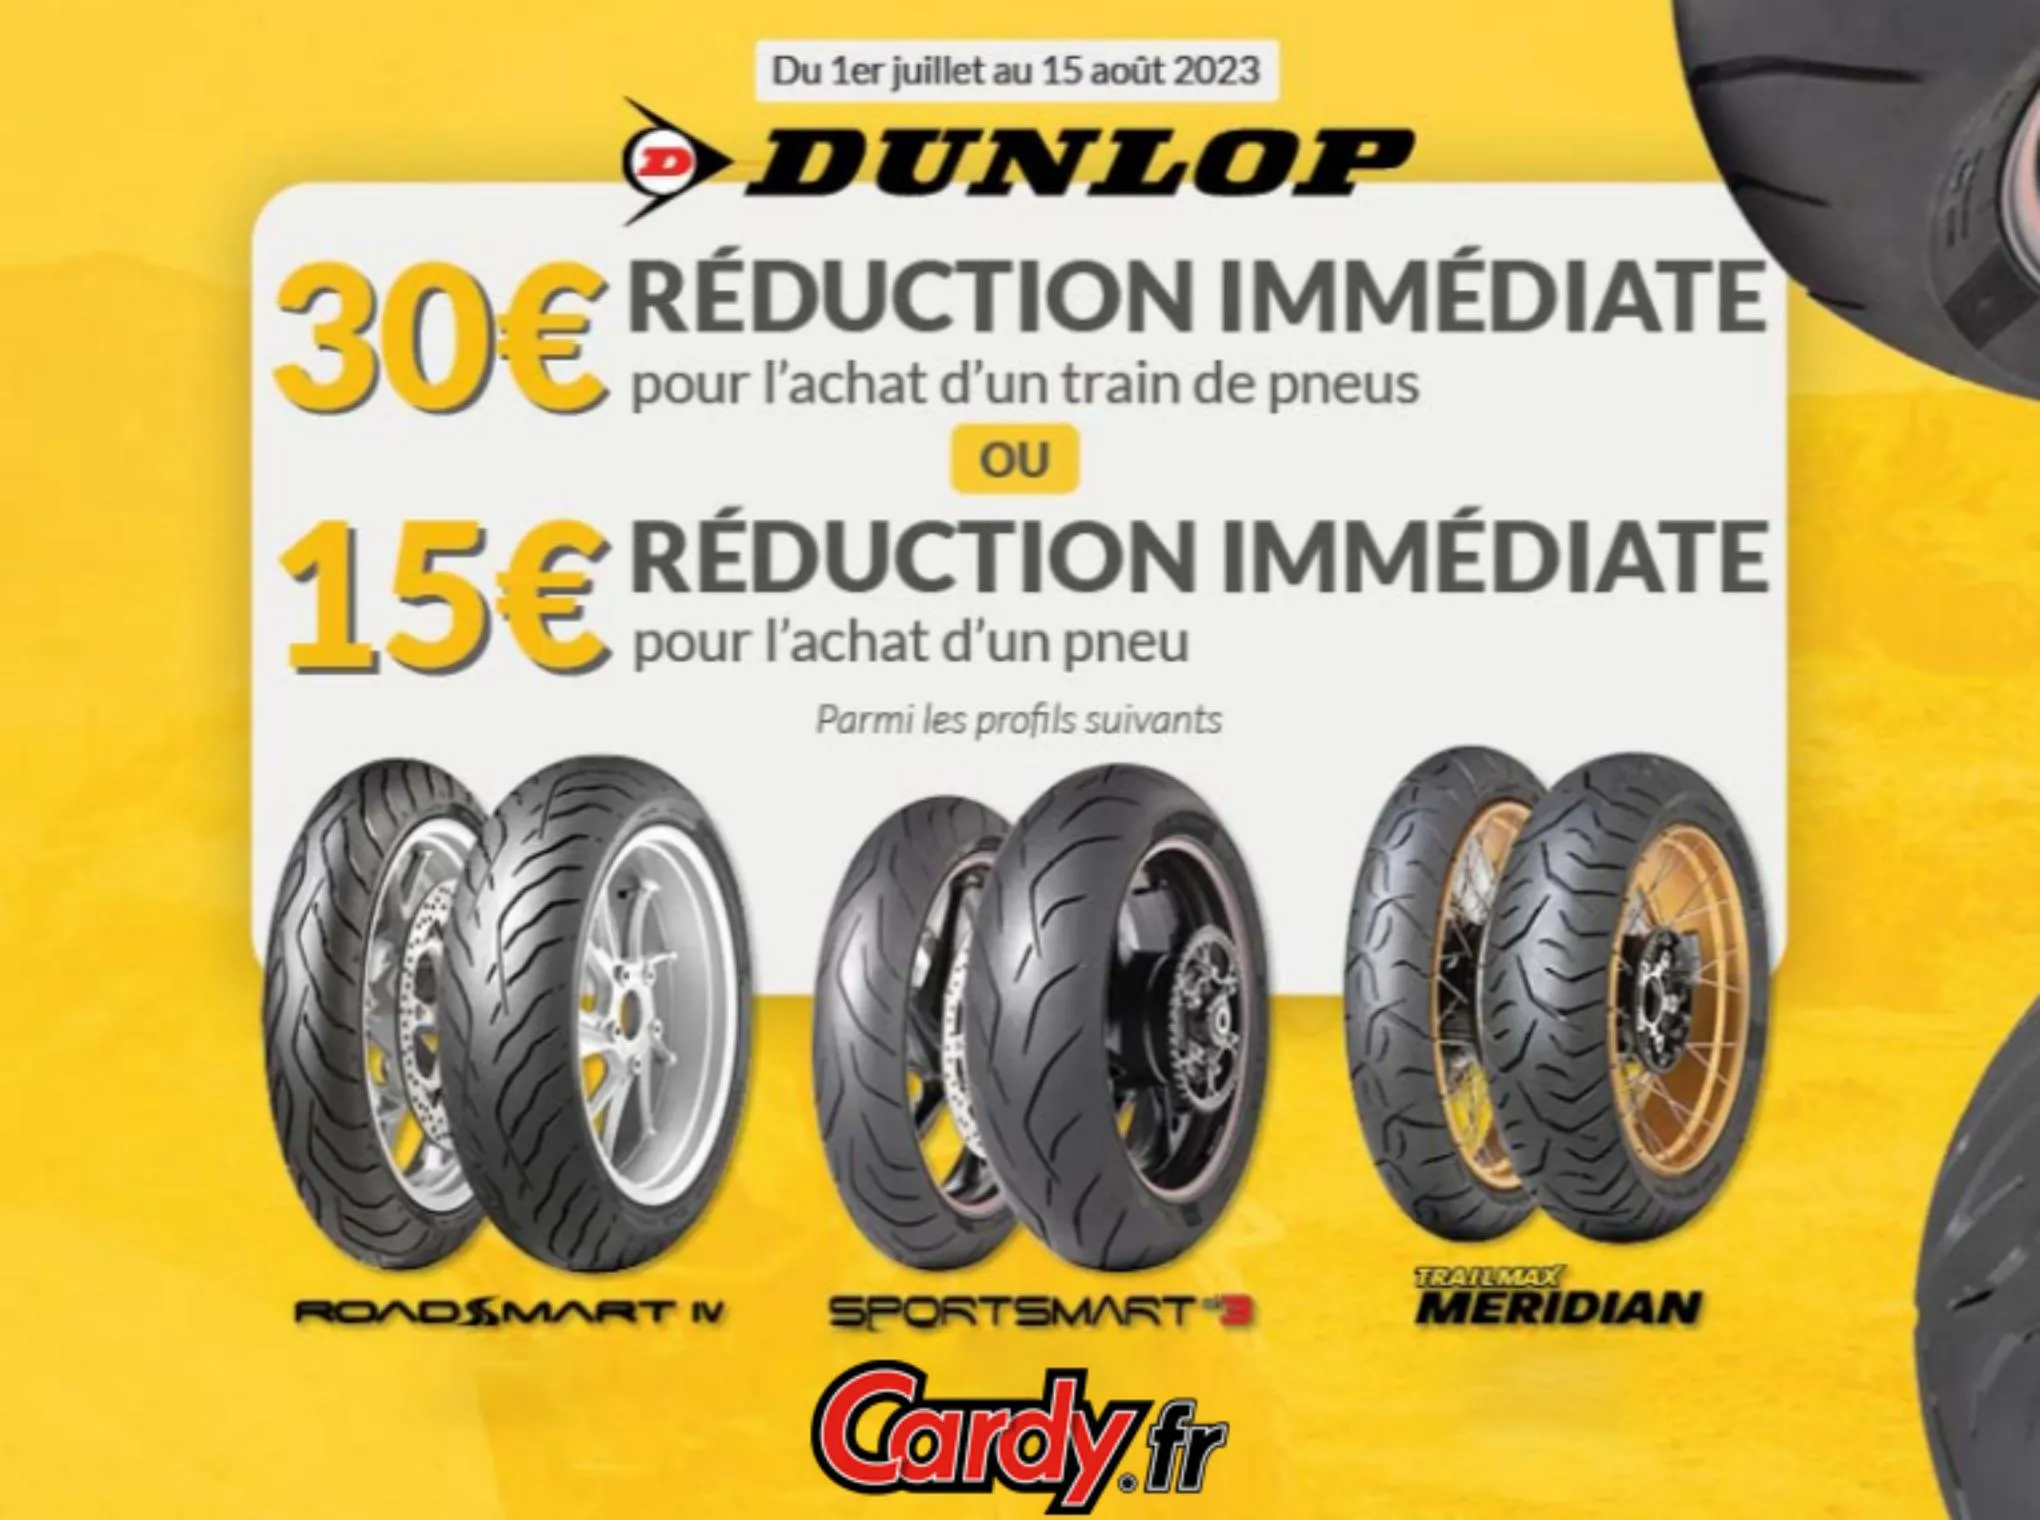 Catalogue 30€ reduction immediate pour l'achat d'un train de pneus, page 00001